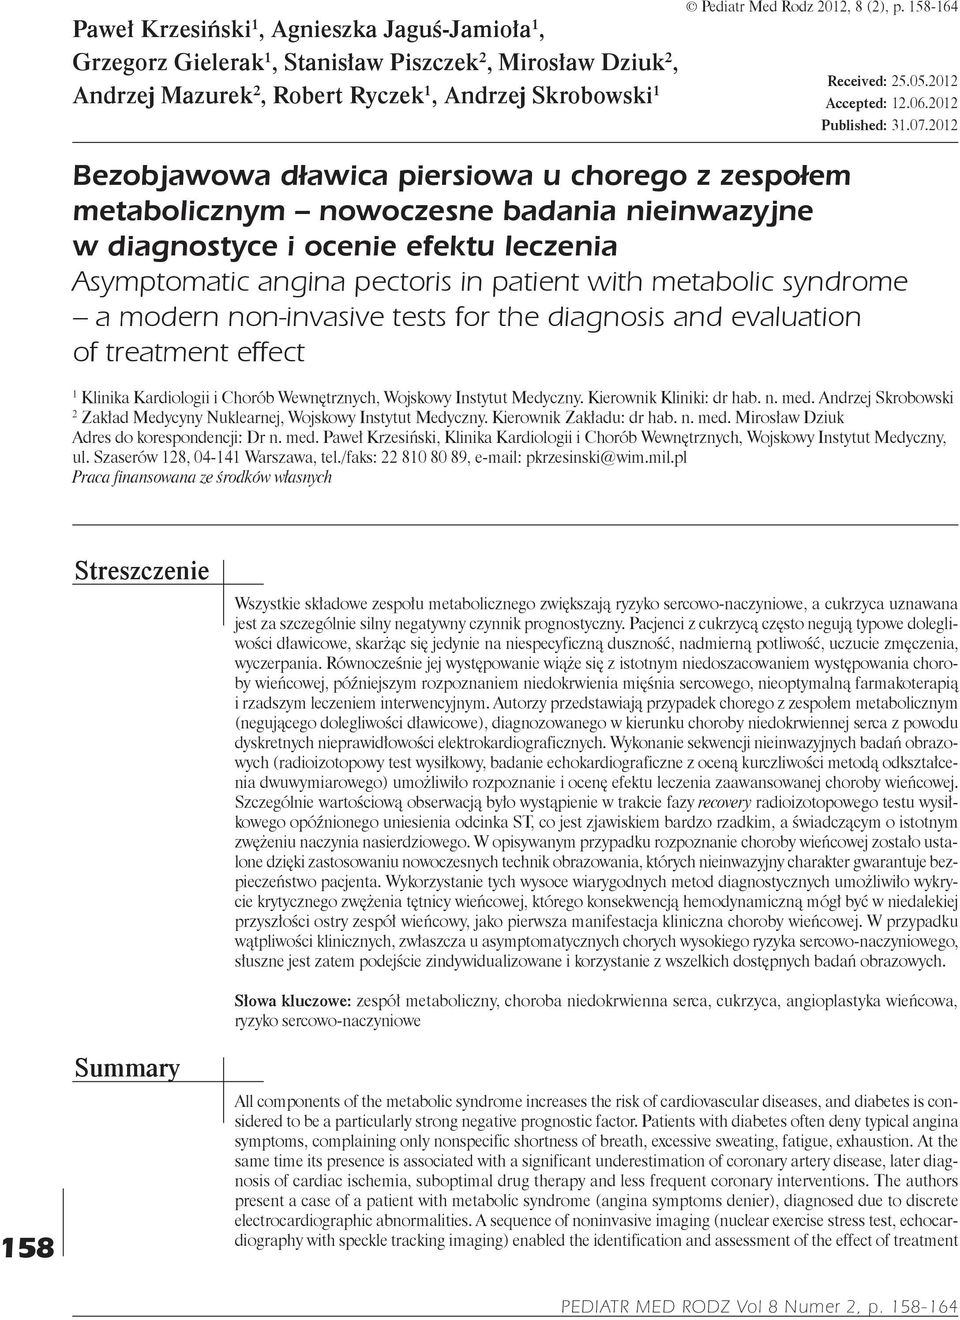 2012 Bezobjawowa dławica piersiowa u chorego z zespołem metabolicznym nowoczesne badania nieinwazyjne w diagnostyce i ocenie efektu leczenia Asymptomatic angina pectoris in patient with metabolic